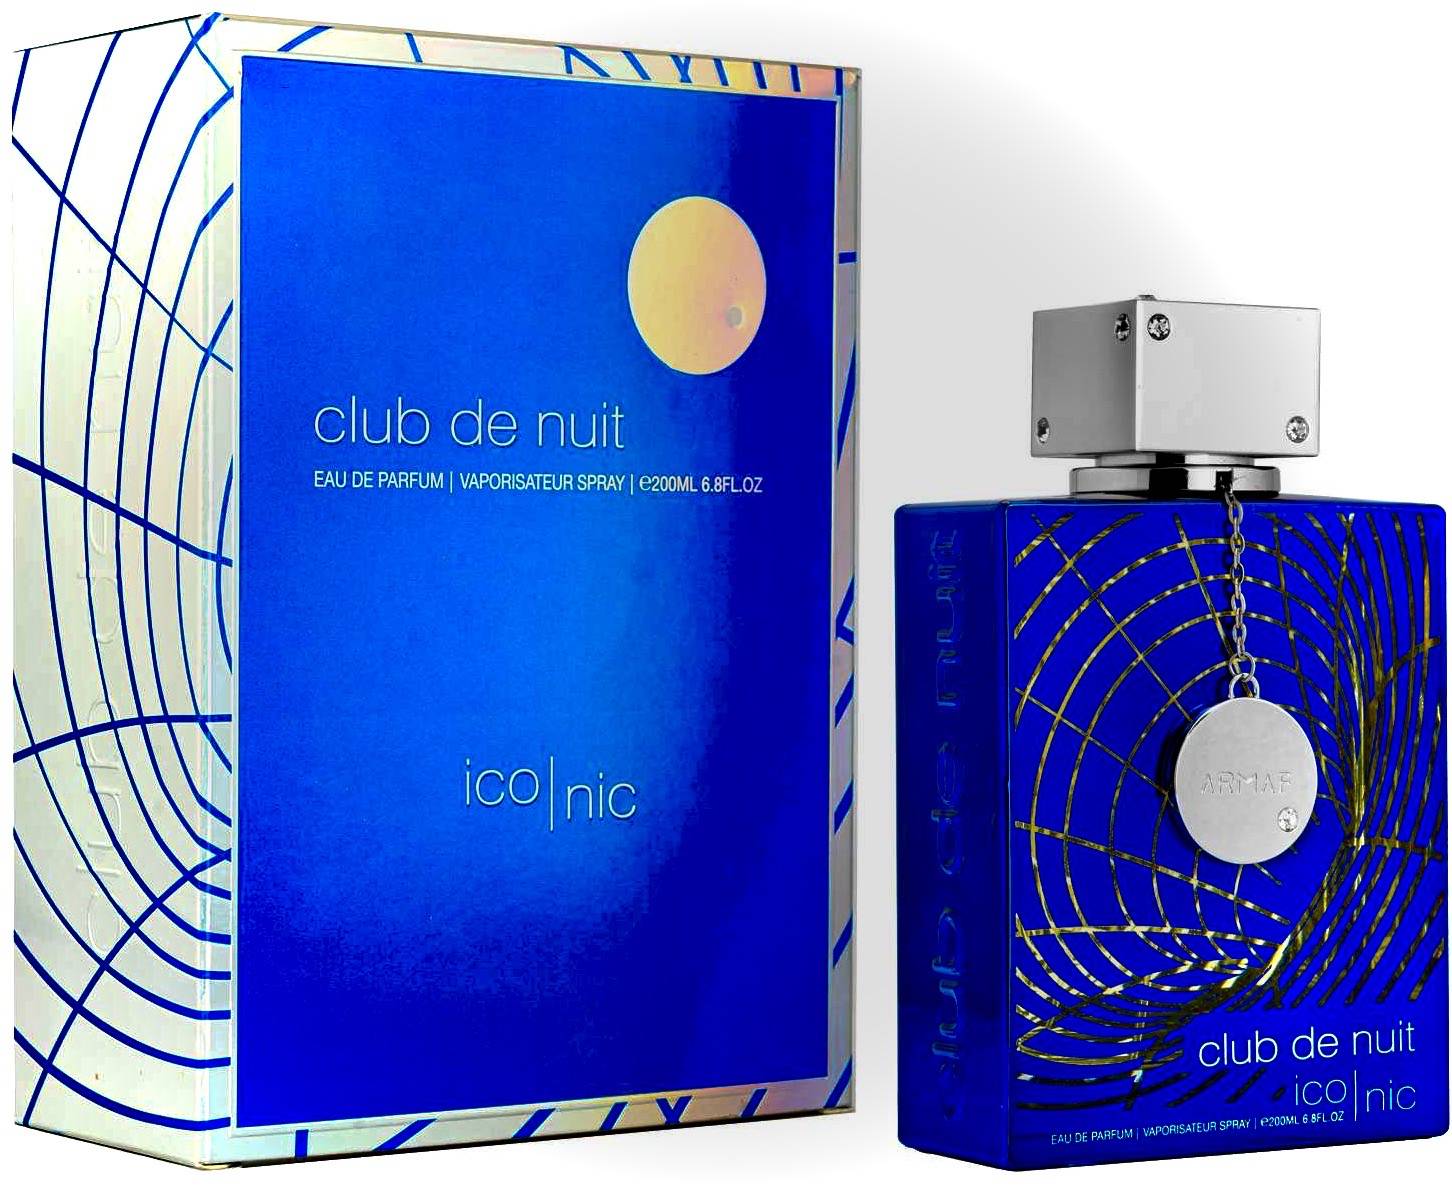 Armaf Club de Nuit ICONIC 6.8.oz Eau de Parfum | 200mL Jumbo Size ...